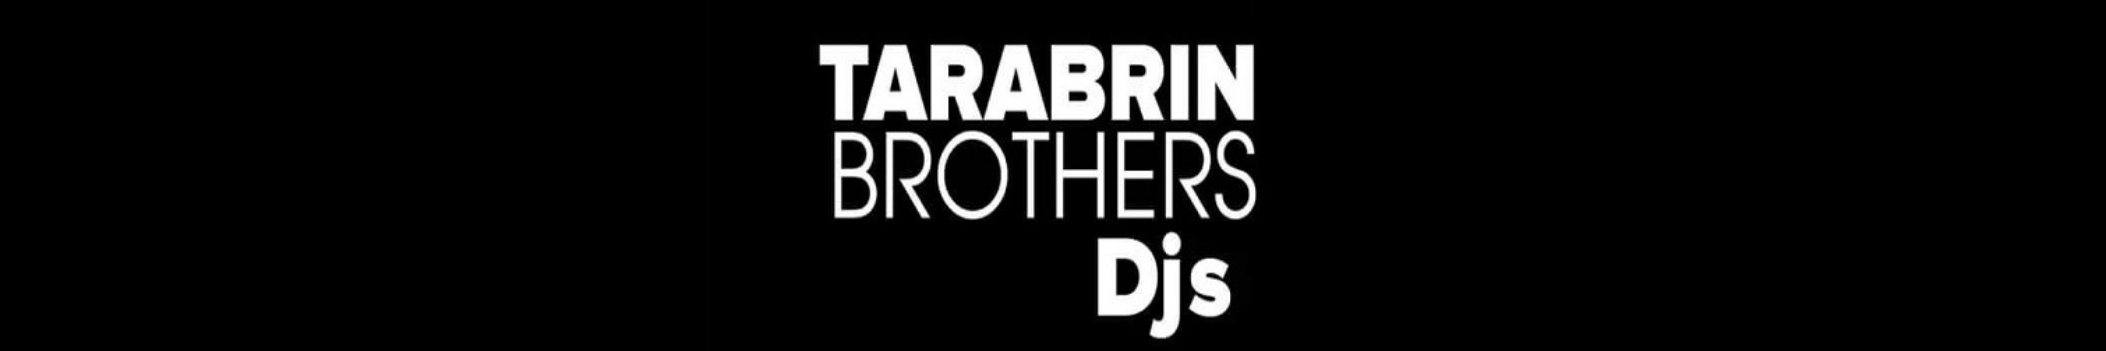 Tarabrin Brothers DJs